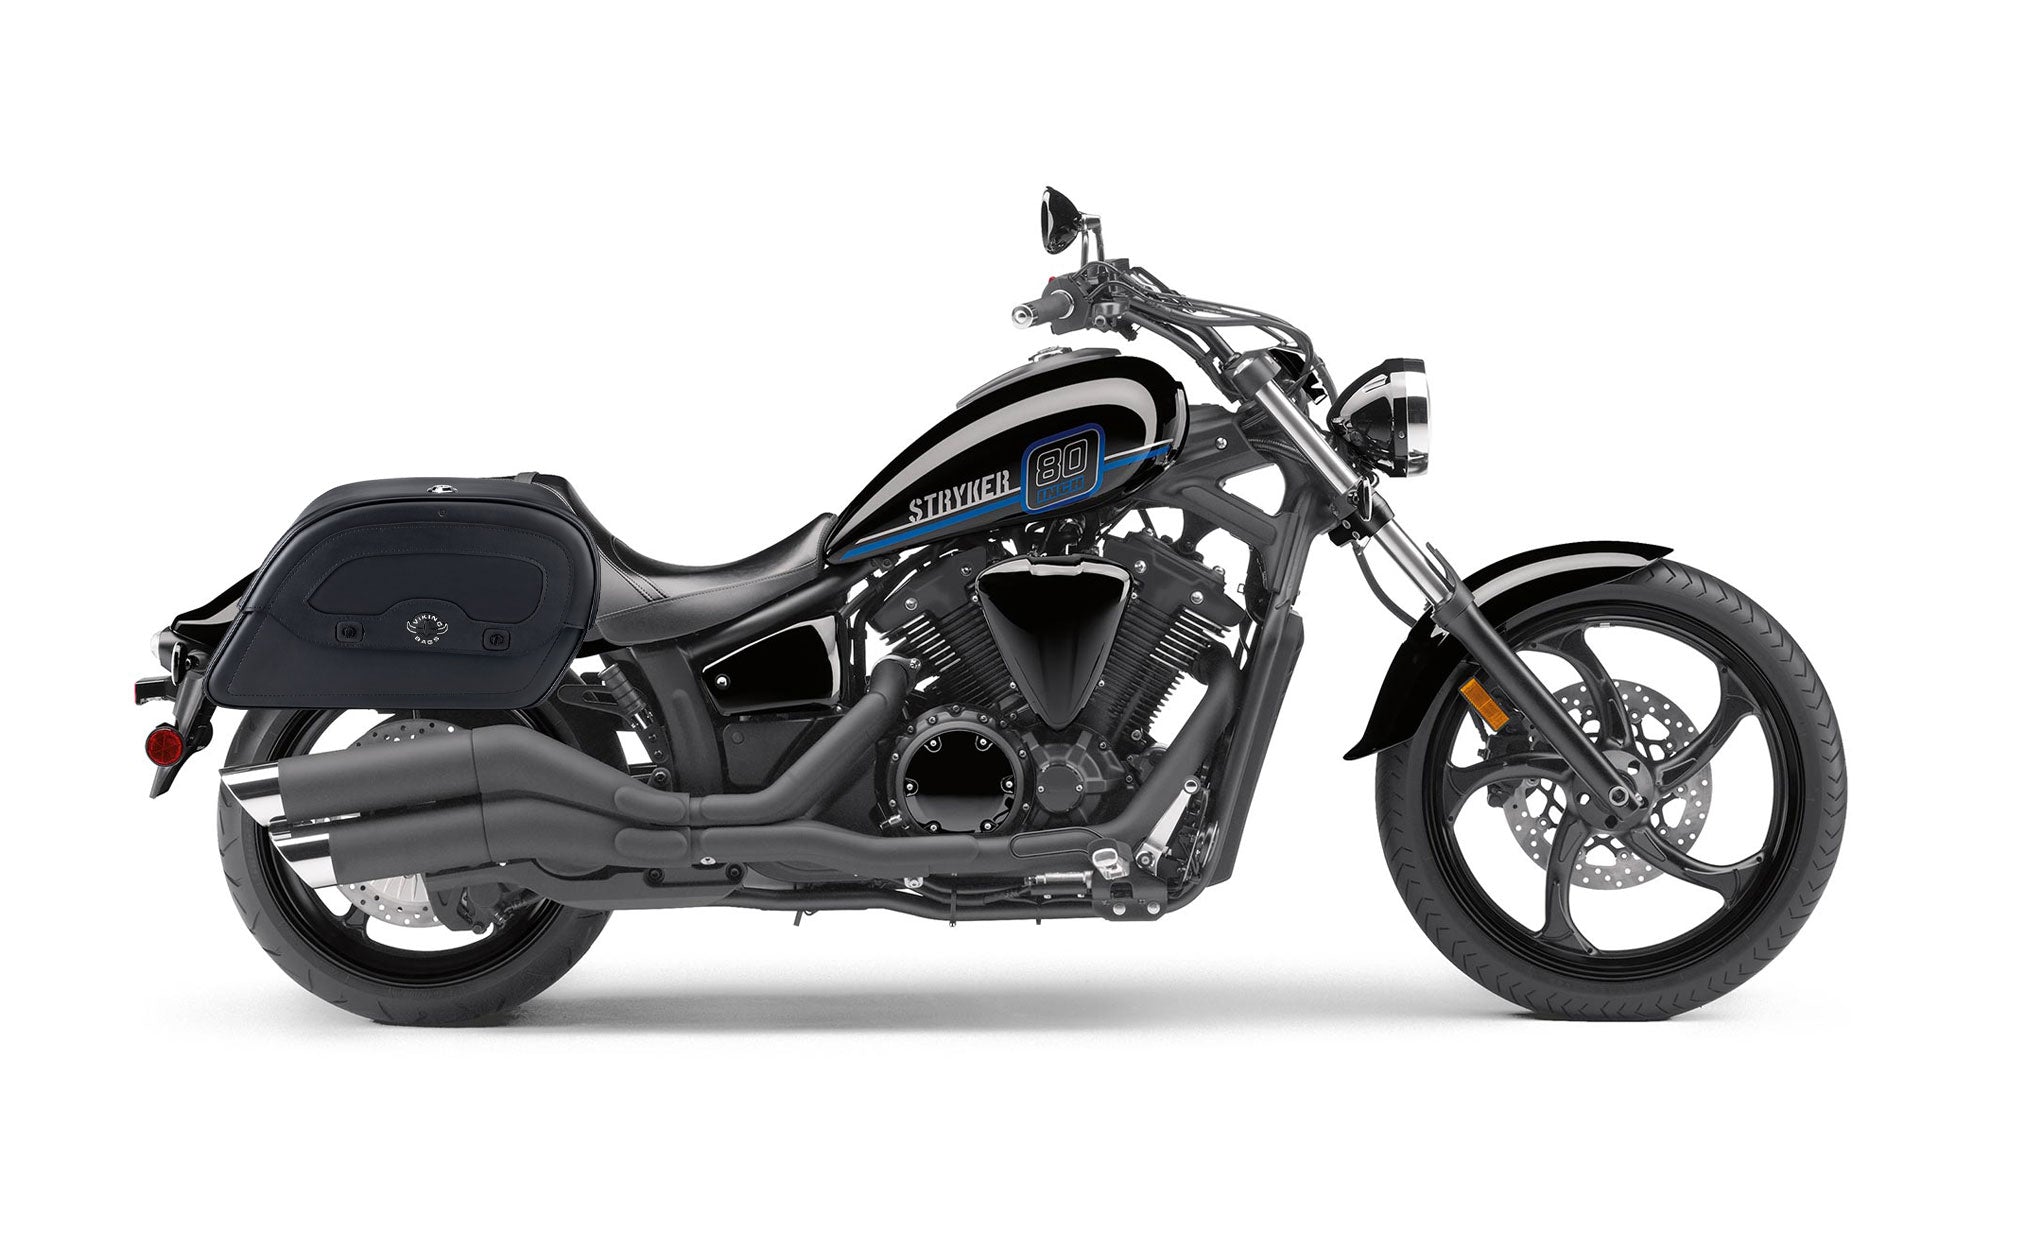 Viking Warrior Large Yamaha Stryker Leather Motorcycle Saddlebags on Bike Photo @expand